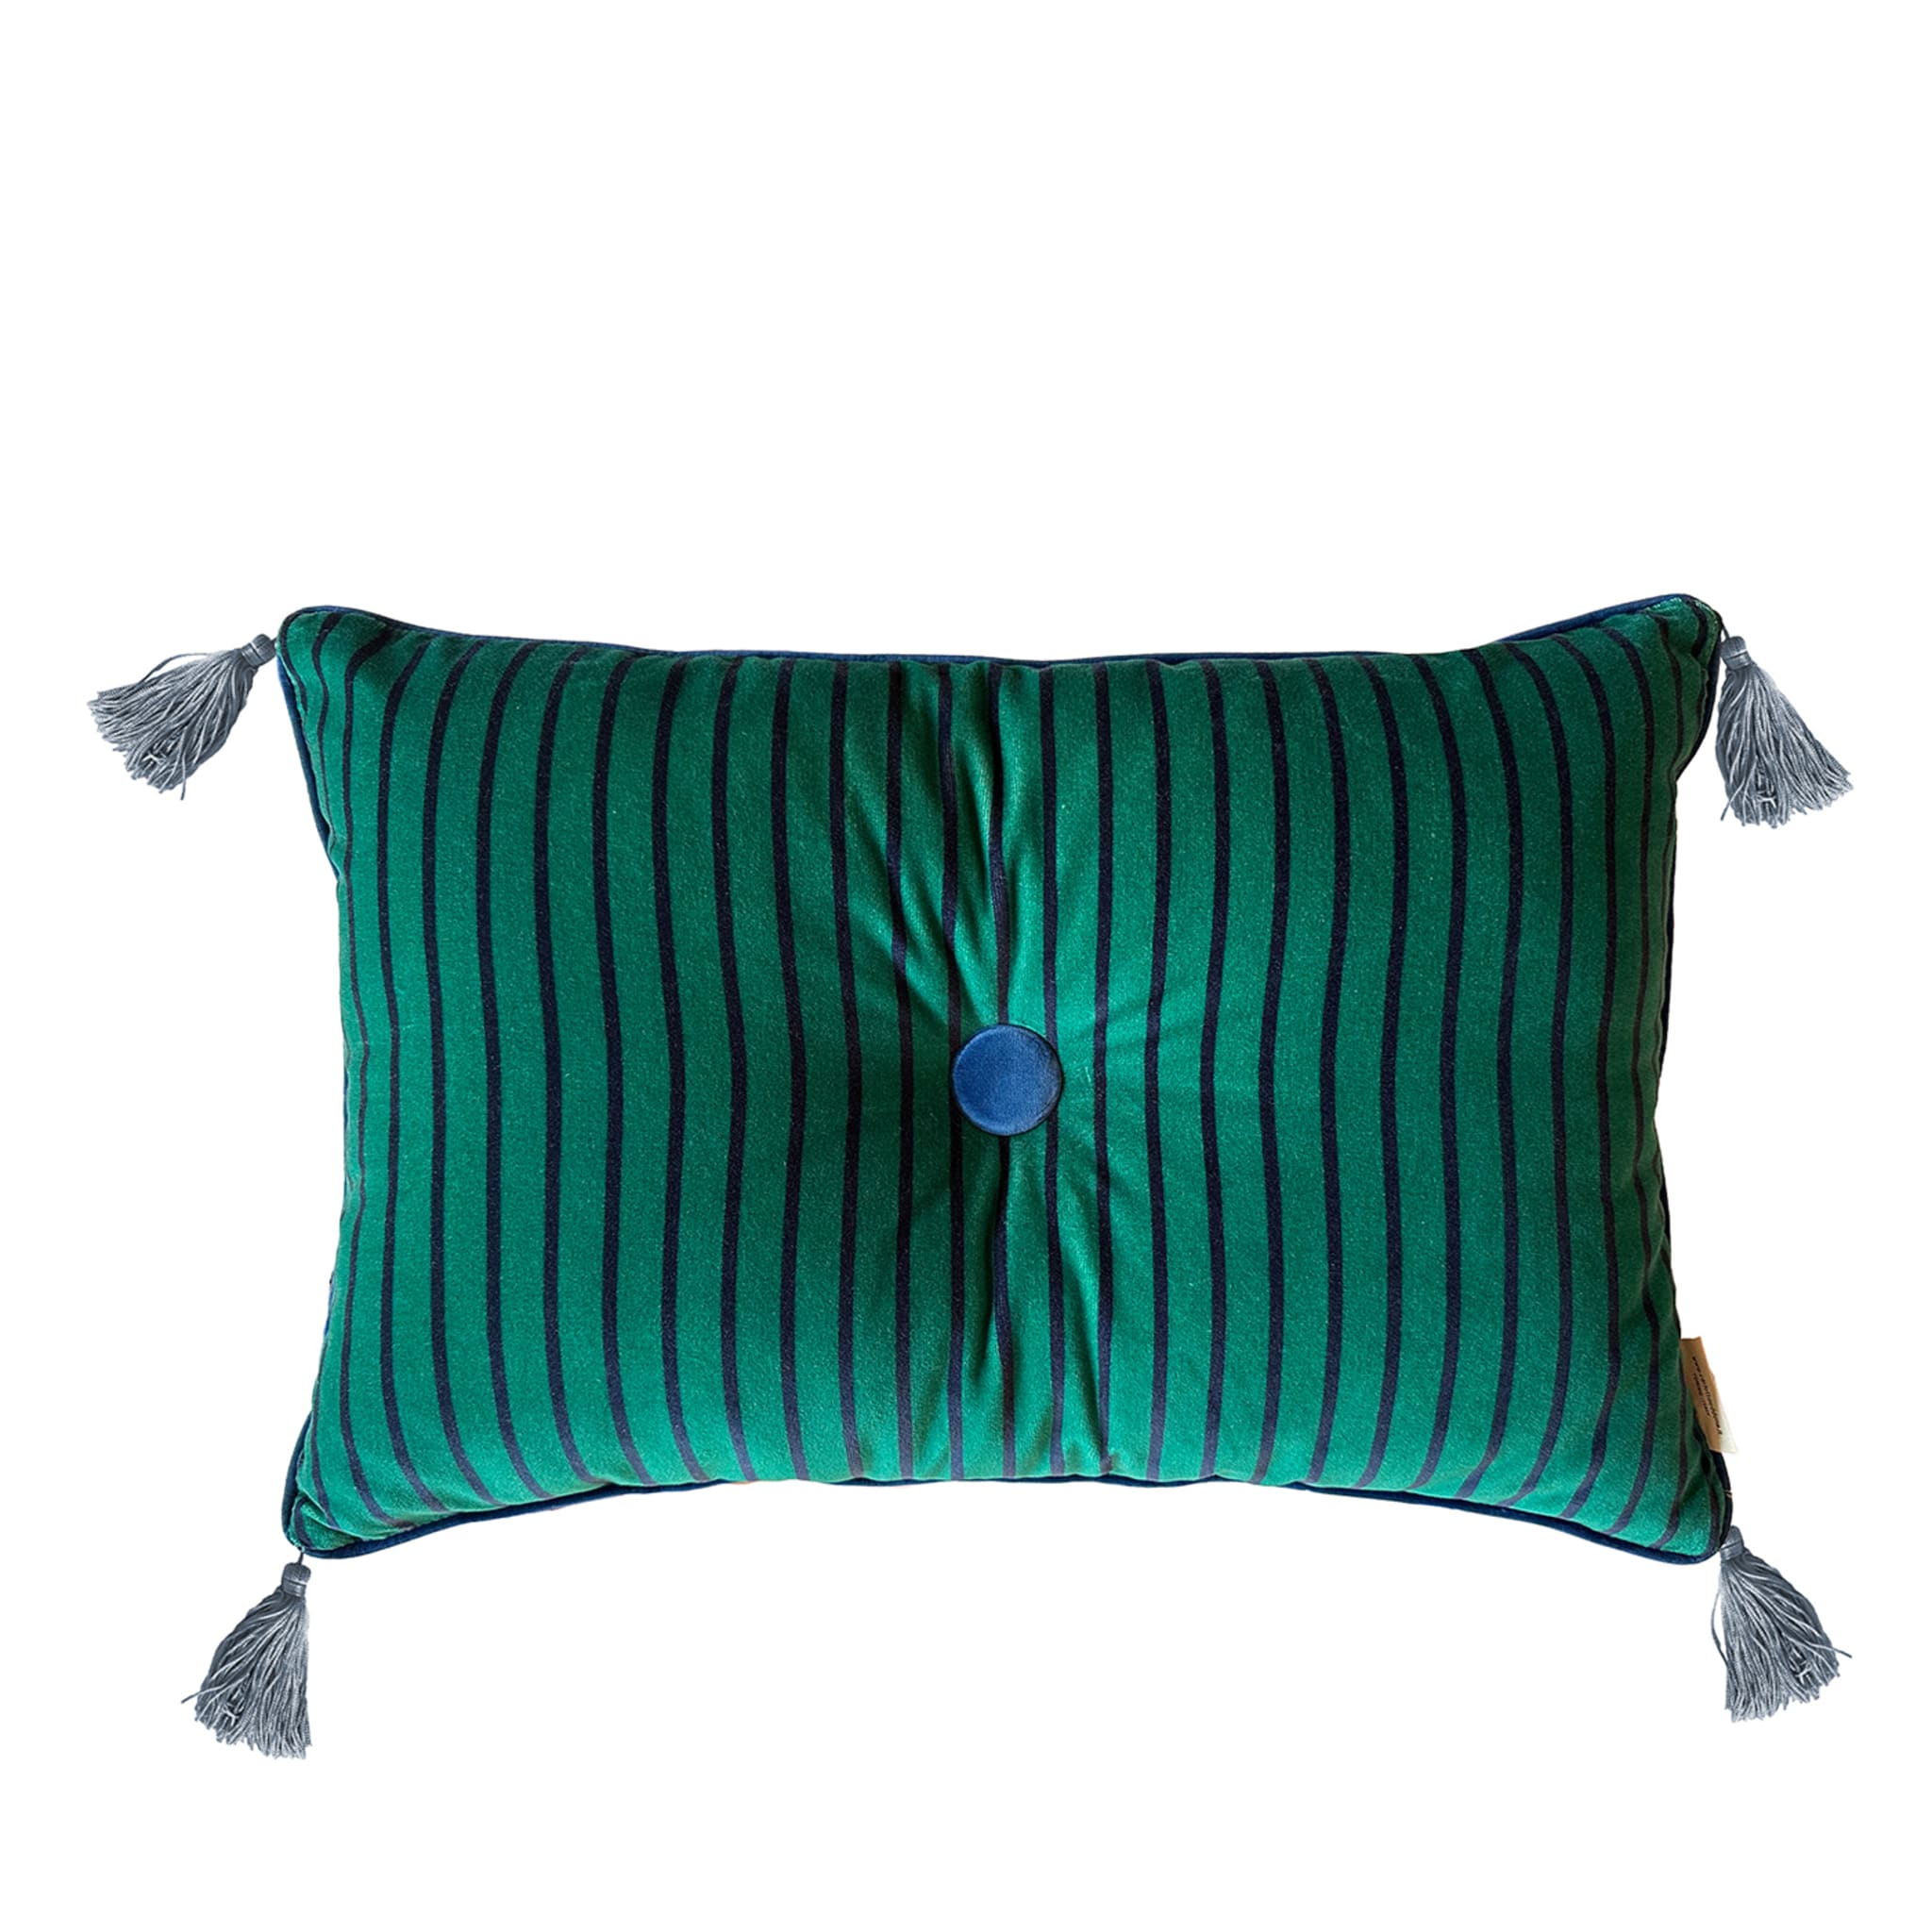 Sweet Pillow Rectangular Striped Teal Kissen - Hauptansicht